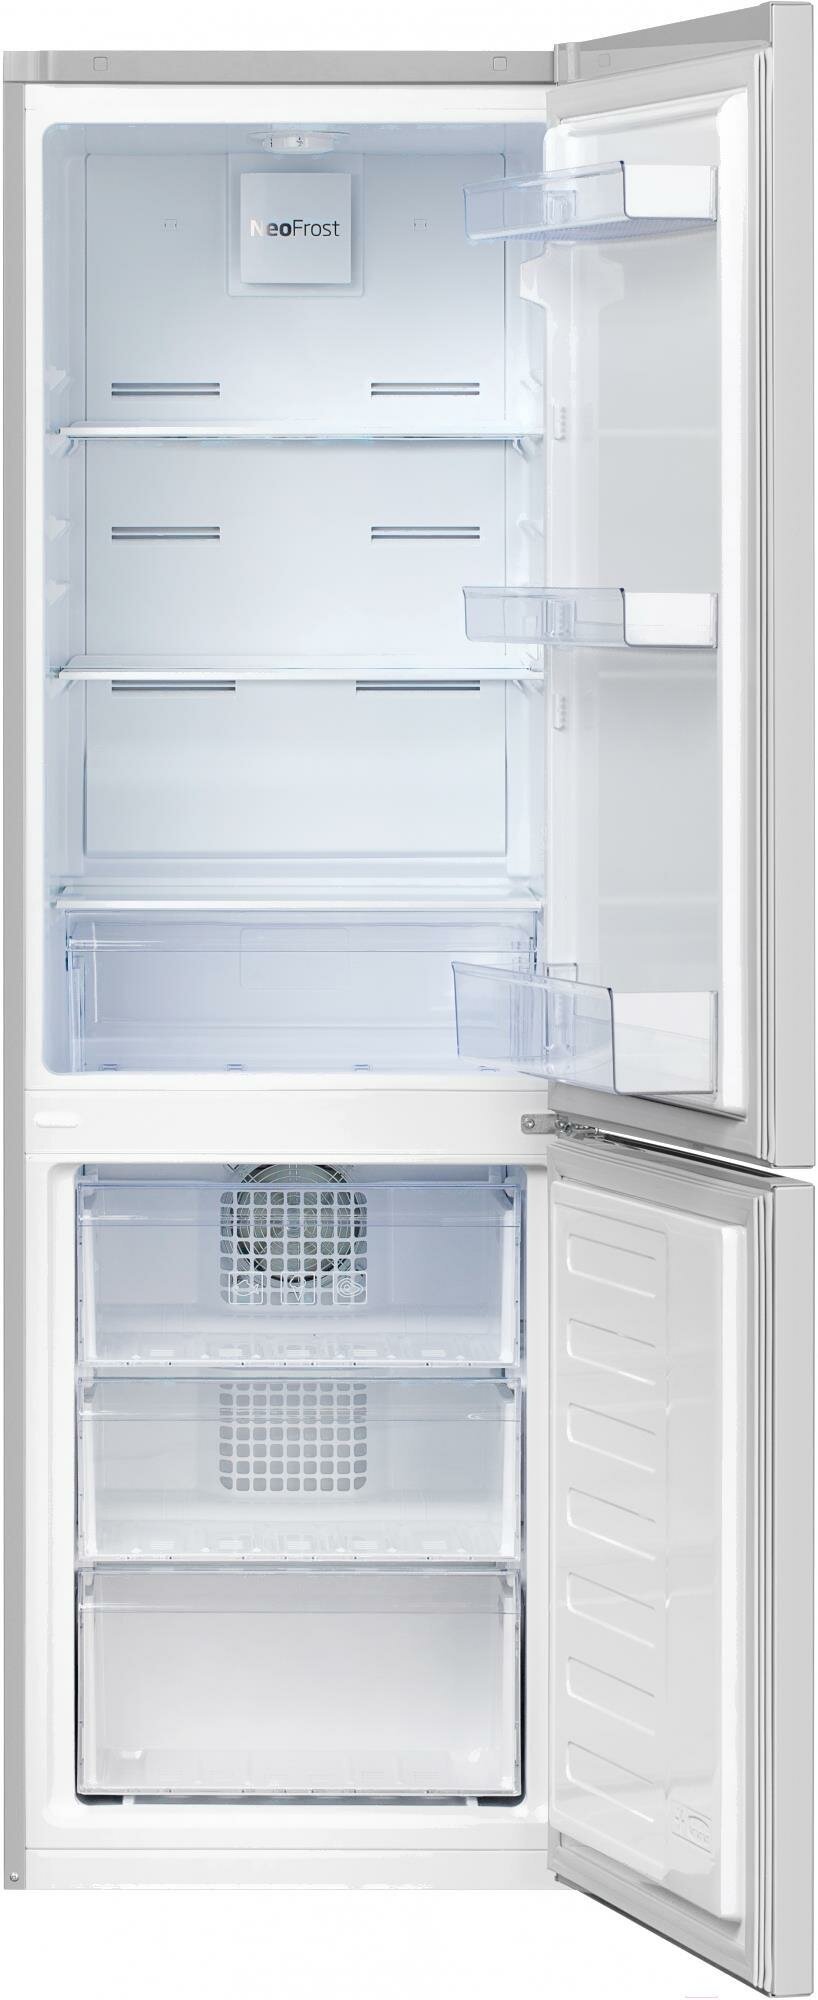 Холодильник Beko RCNK270K20S серебристый, двухкамерный, общий объем 270л, с разморозкой холодильной камеры Total No Frost, с разморозкой морозильной камеры Total No Frost, расположение морозильной камеры: снизу